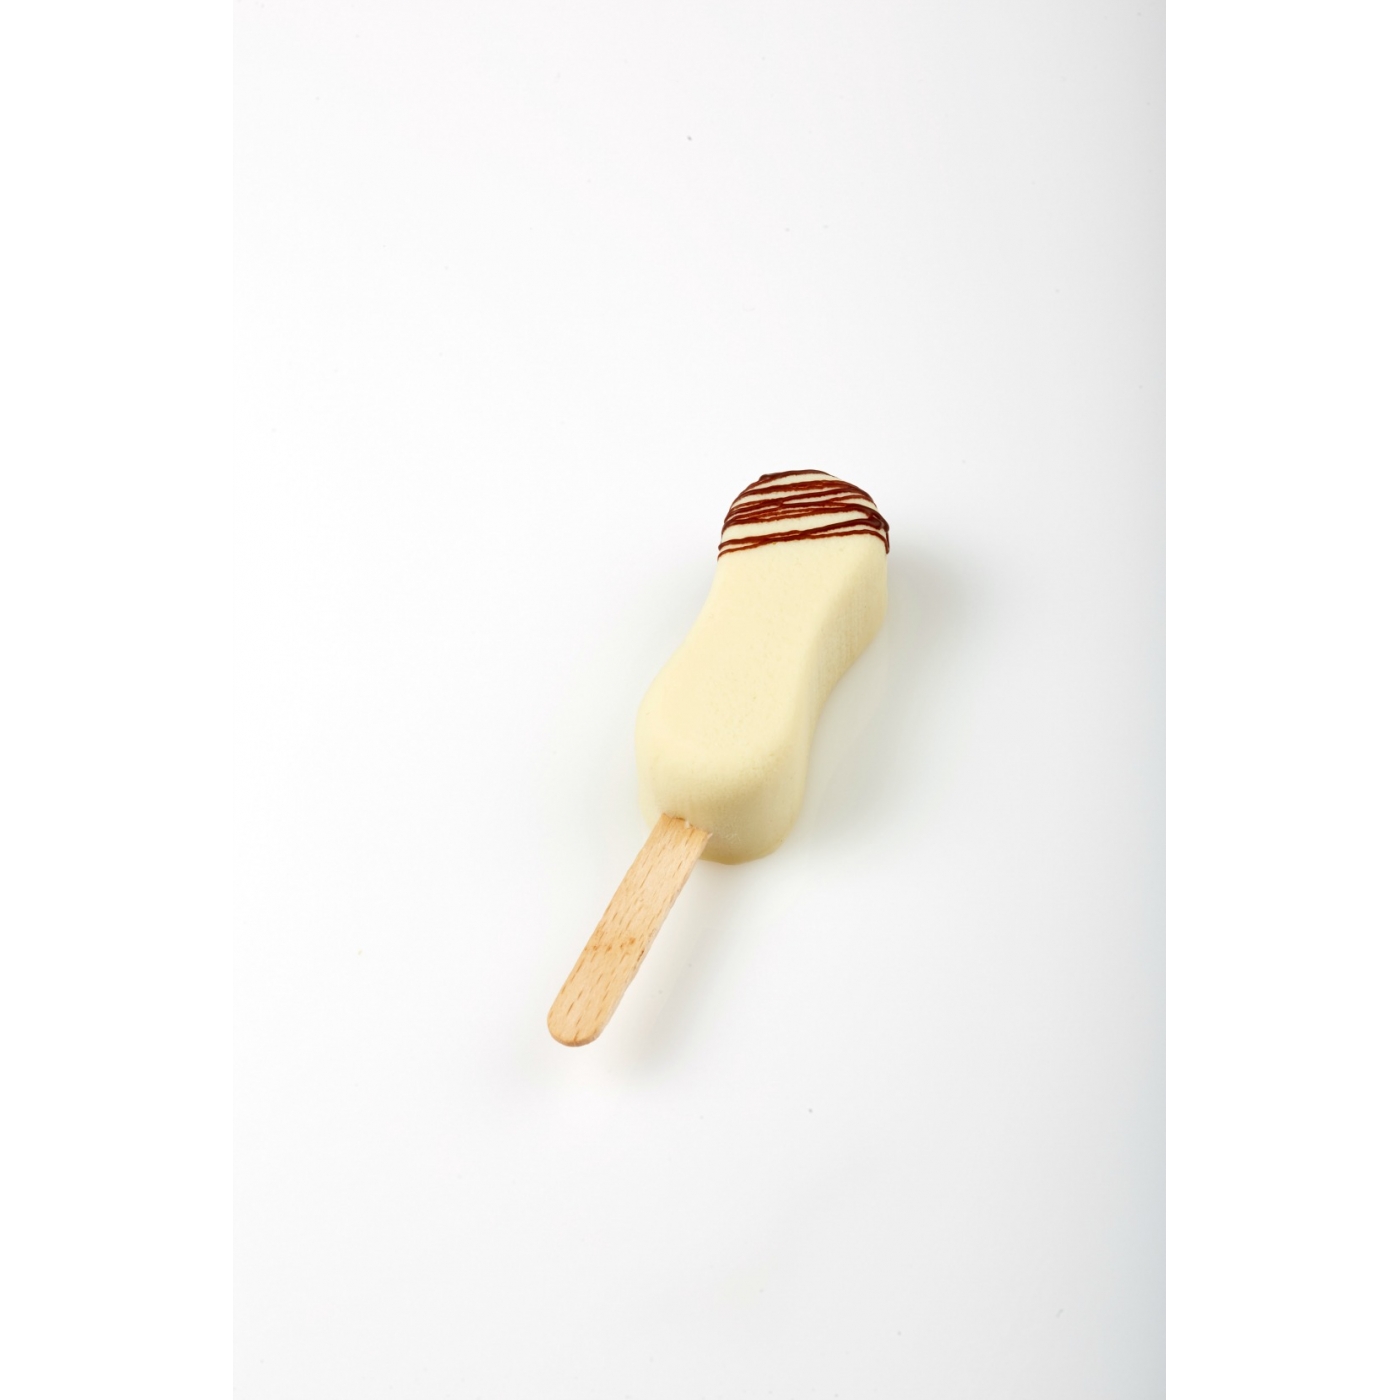 Второе дополнительное изображение для товара Форма для мороженого на палочке «Снэк круглый» PL12 (Pavoni, Италия)